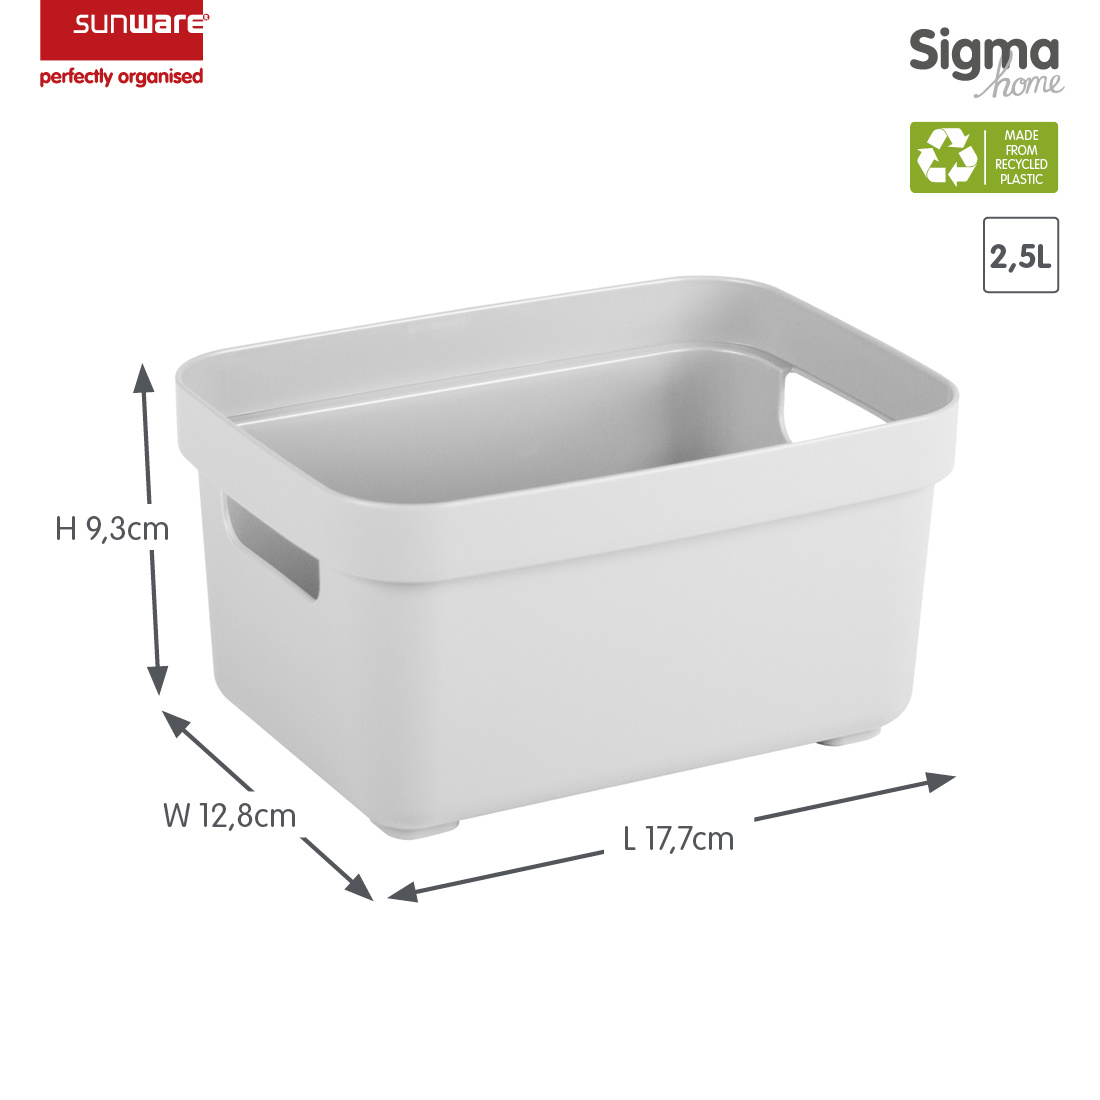 Sigma home Aufbewahrungsbox 2,5L weiß